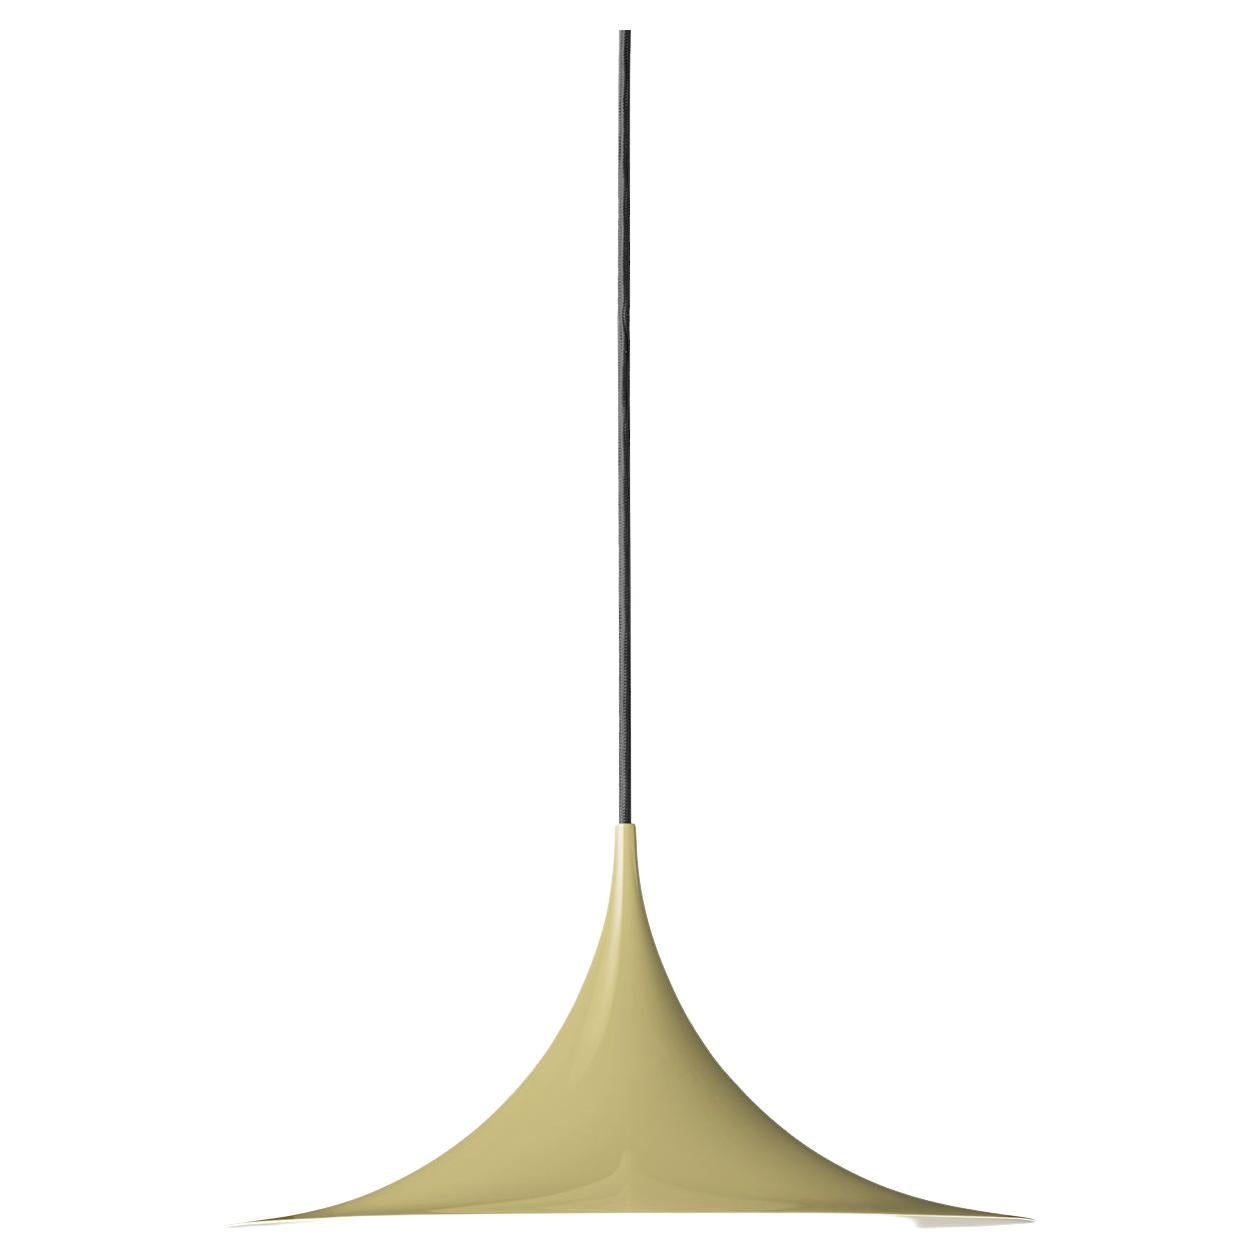 Le Semi Pendant est une lampe suspendue unique, basée sur deux quarts de cercle assemblés dos à dos. Son abat-jour en métal émaillé en forme d'arche crée une lumière diffuse en forme de cône, idéale au-dessus d'une table à manger ou d'un plan de